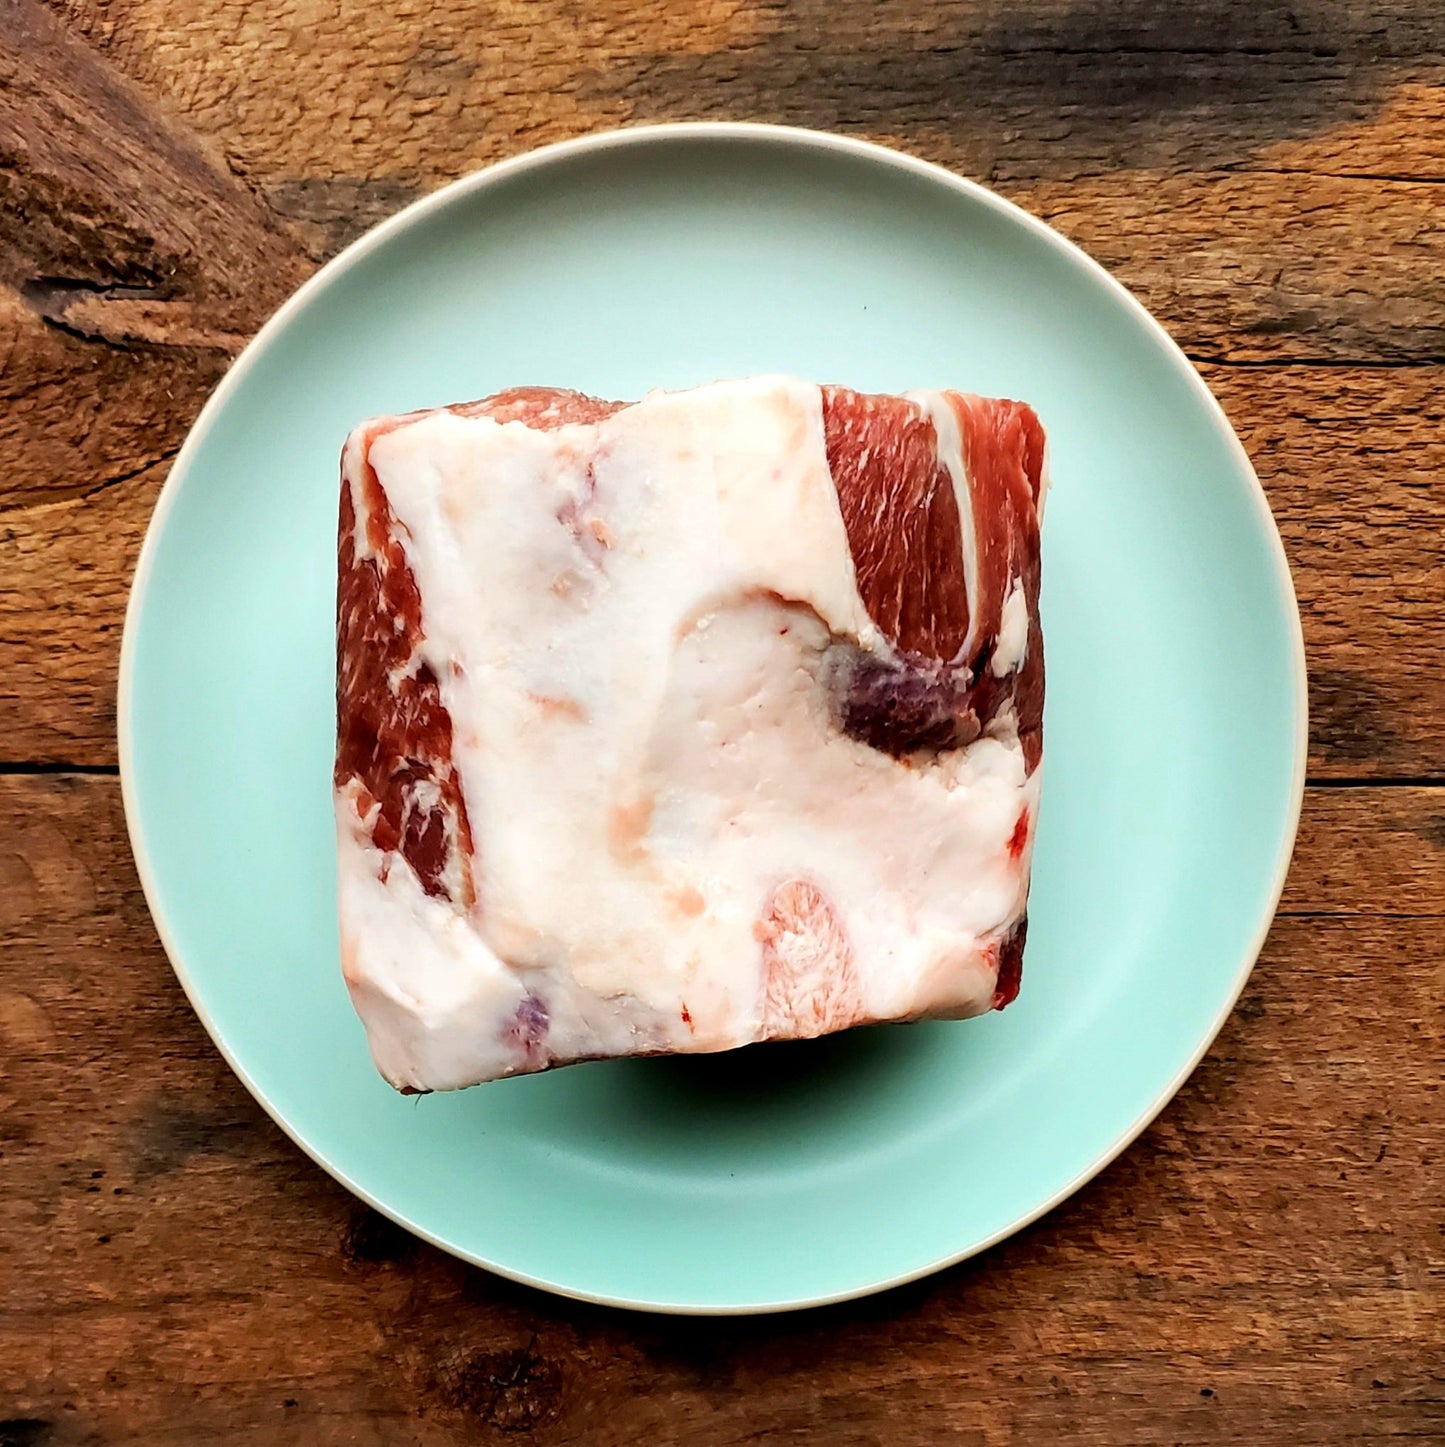 Red Wattle Bone-In Pork Loin Roast